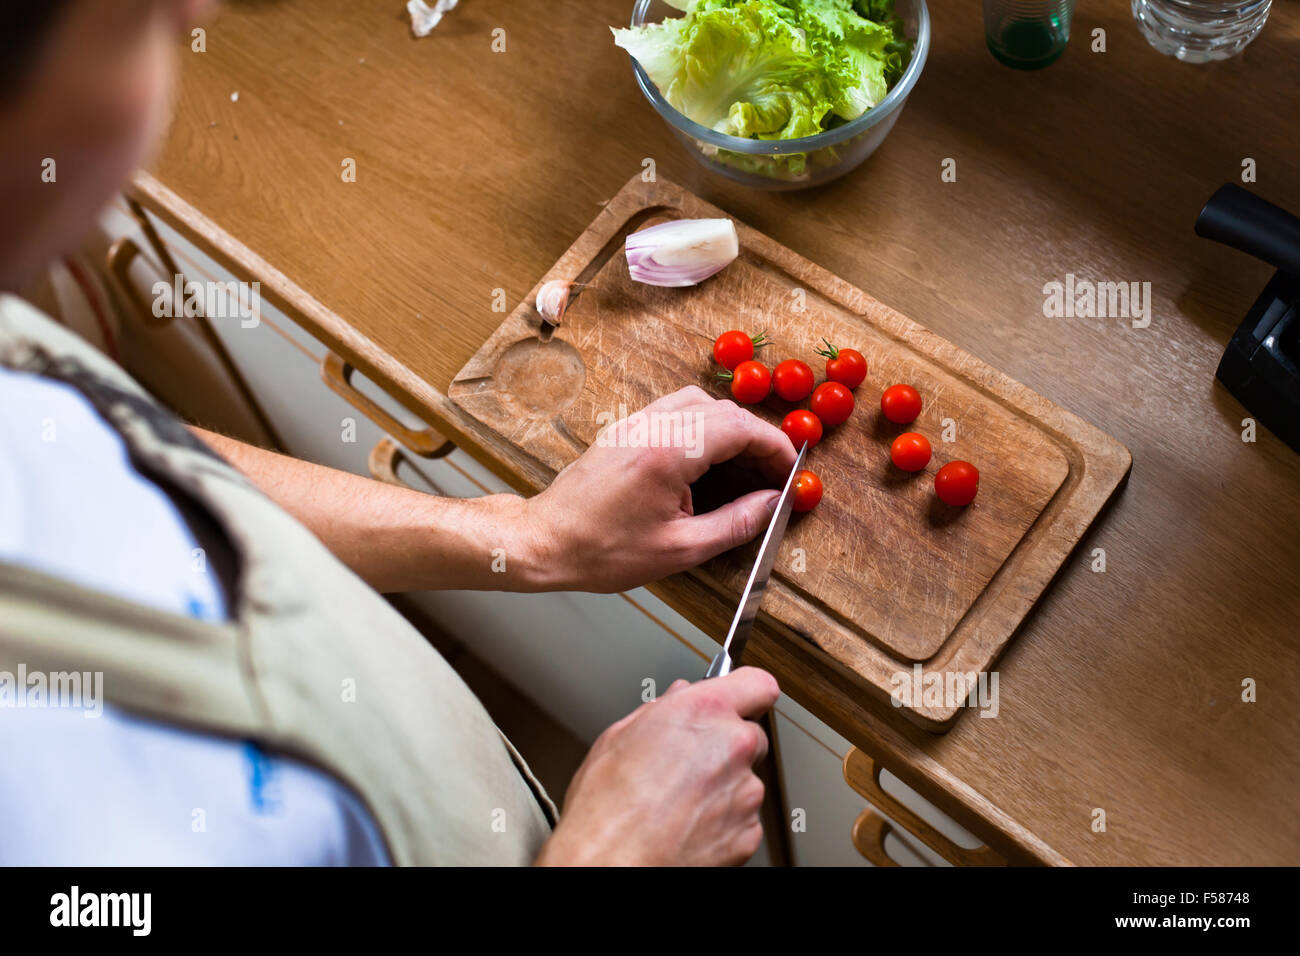 La cuisine de l'homme dans la cuisine salade, tomates, couper les mains des hommes des aliments sains Banque D'Images